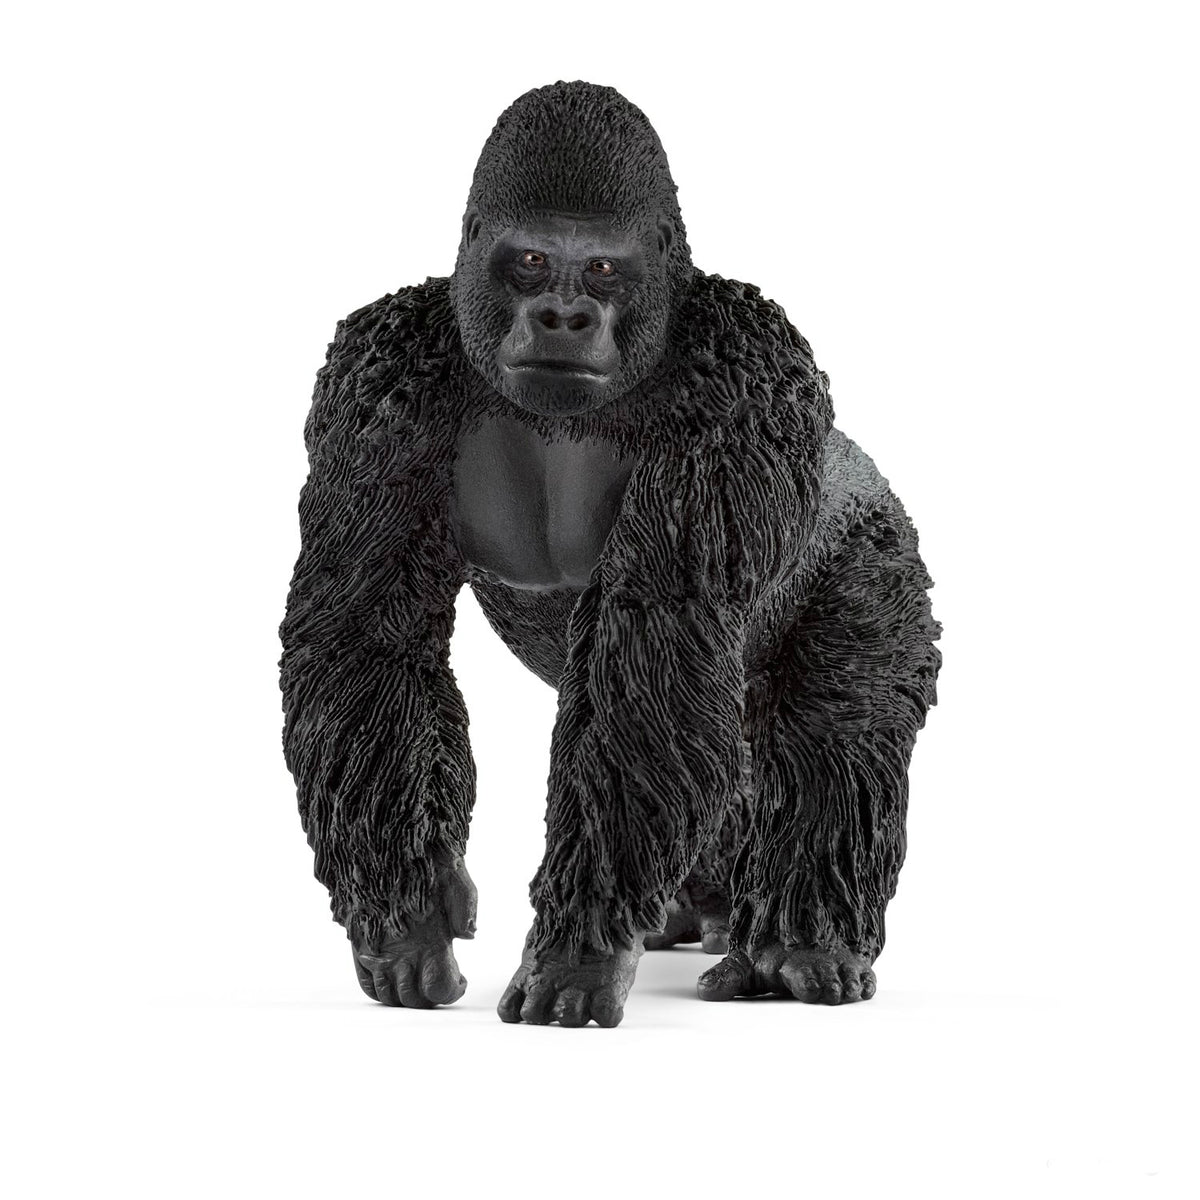 Schleich 14770 Figurine Male Gorilla Toy